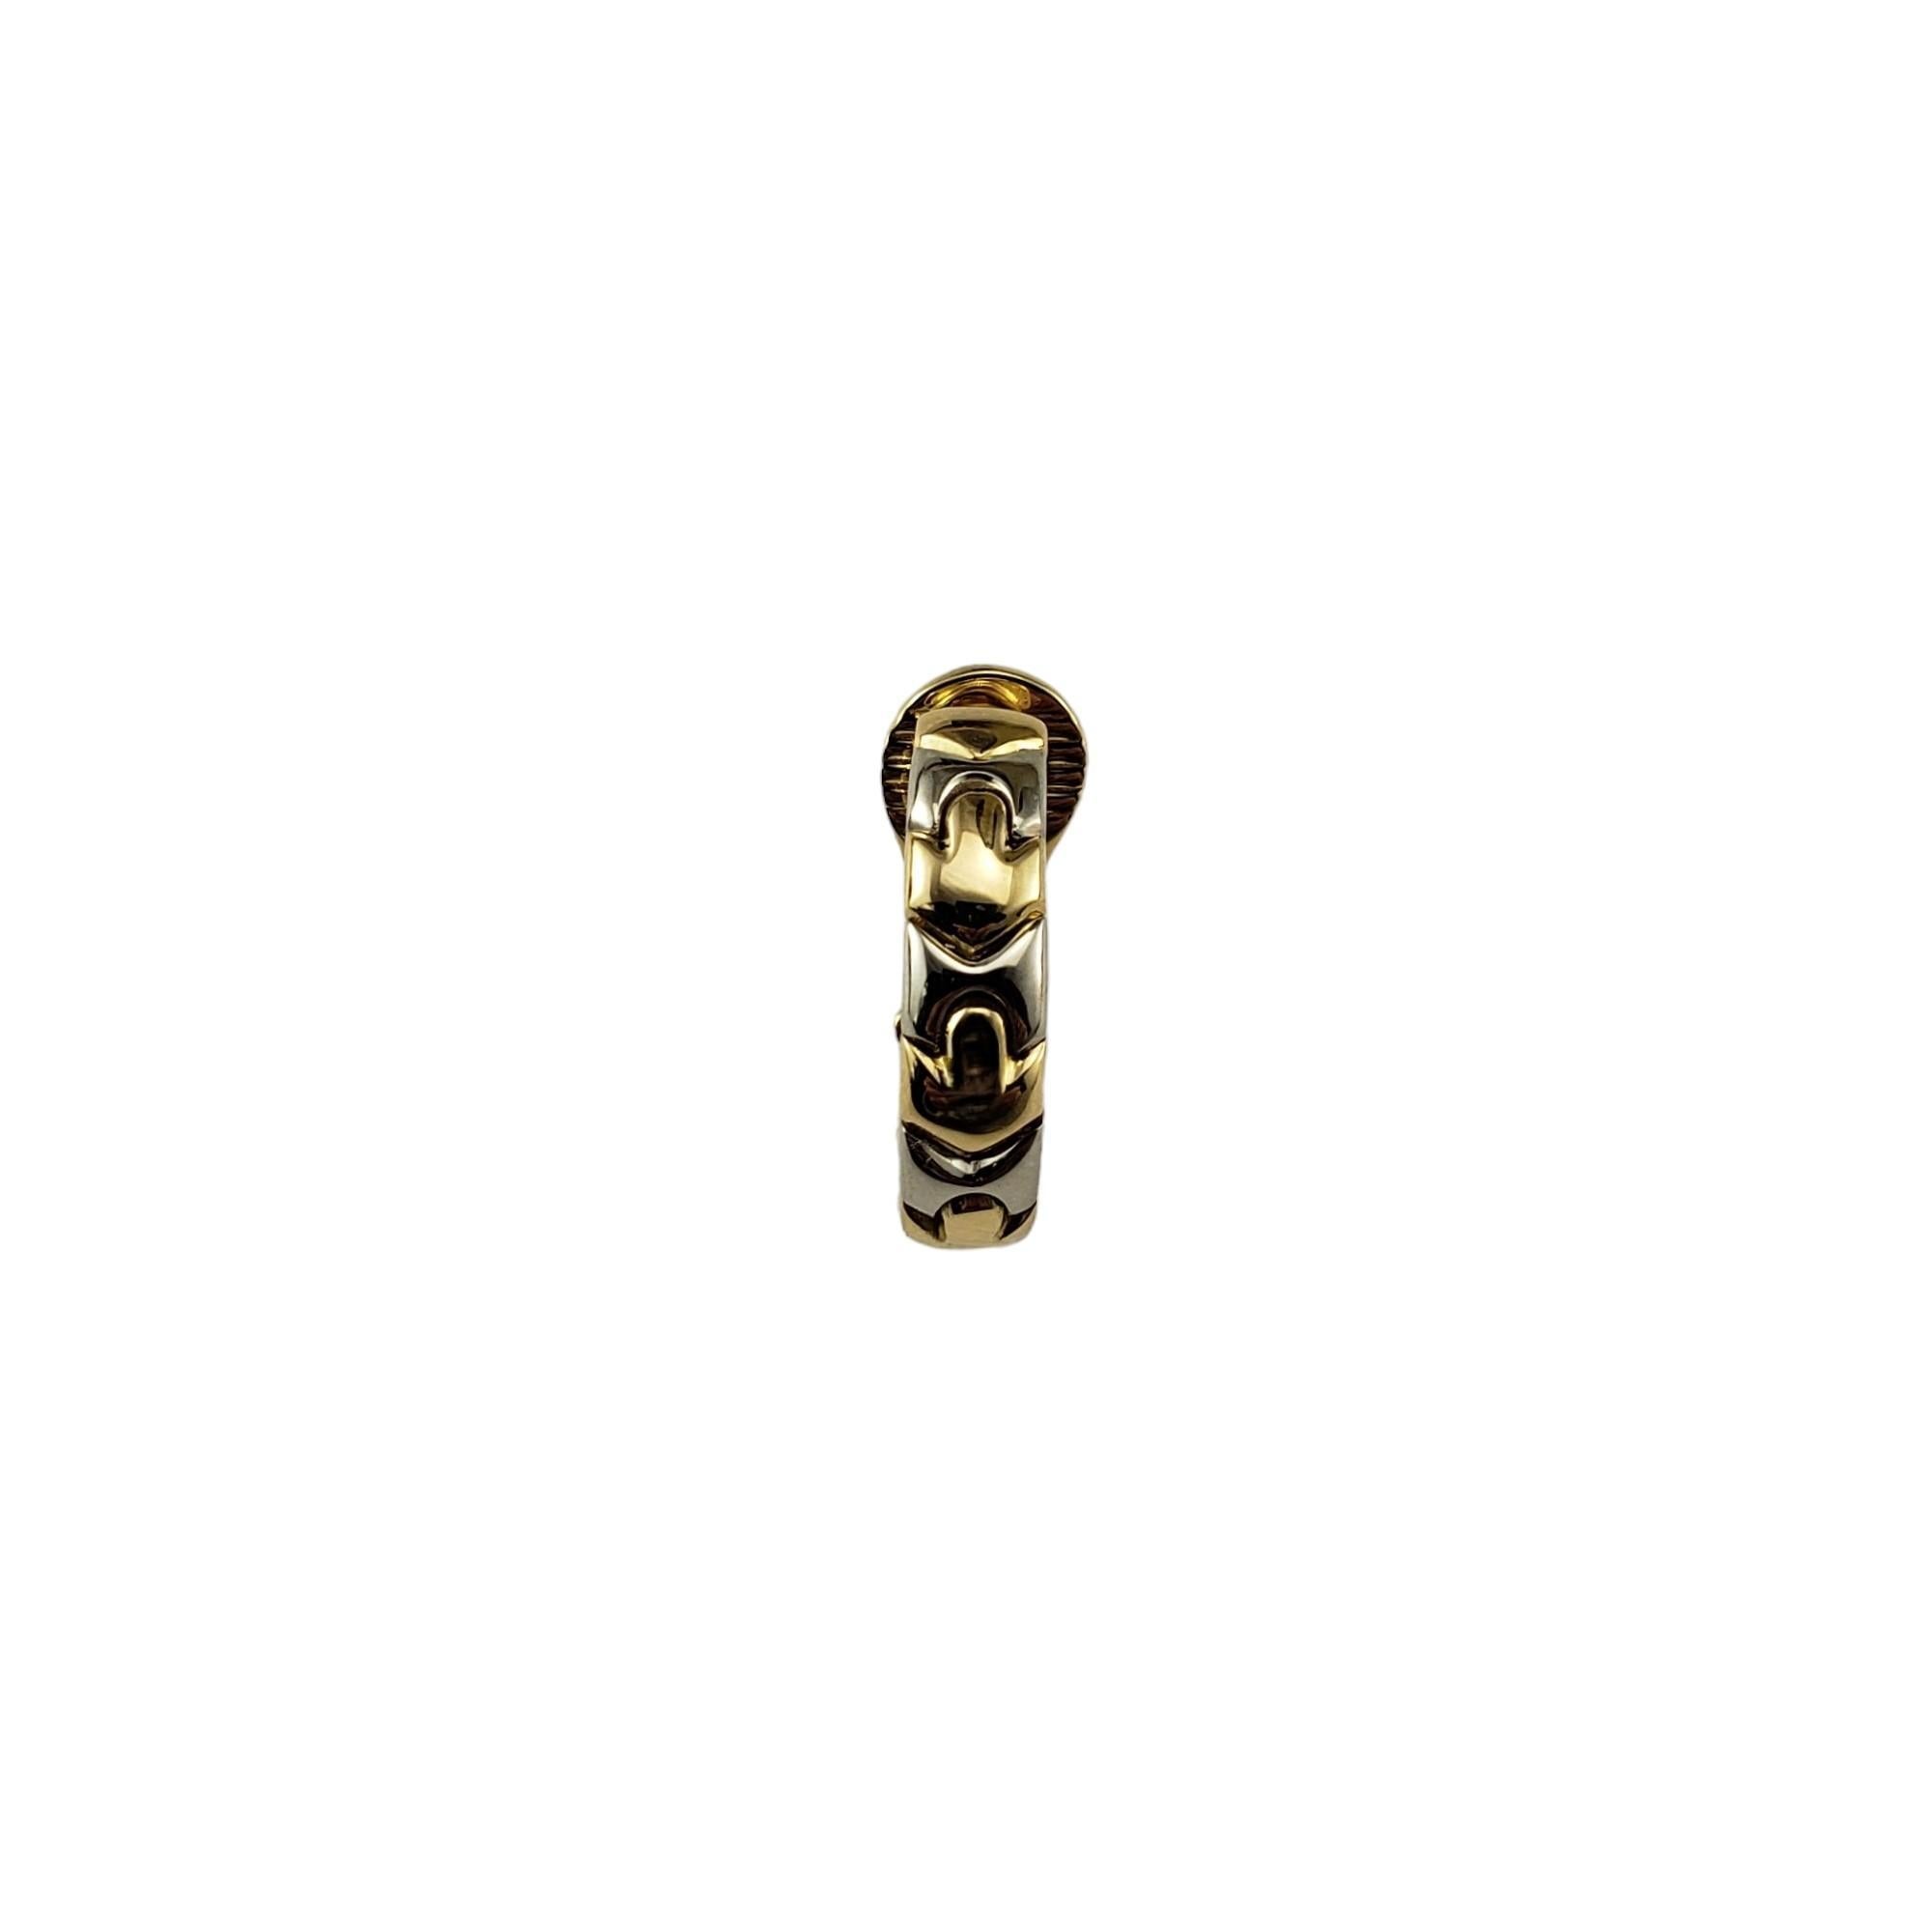 Bvlgari Einzelner 18K zweifarbiger Gold-Reifen-Ohrring

Dieser elegante Ohrring von Bvlgari ist aus wunderschönem 18-karätigem Weiß- und Gelbgold gefertigt.  

Breite: 5 mm

Größe: 20 mm

Wahrzeichen:  750  Bvlgari 1970AL

Gewicht: 3,7 dwt./ 5,8